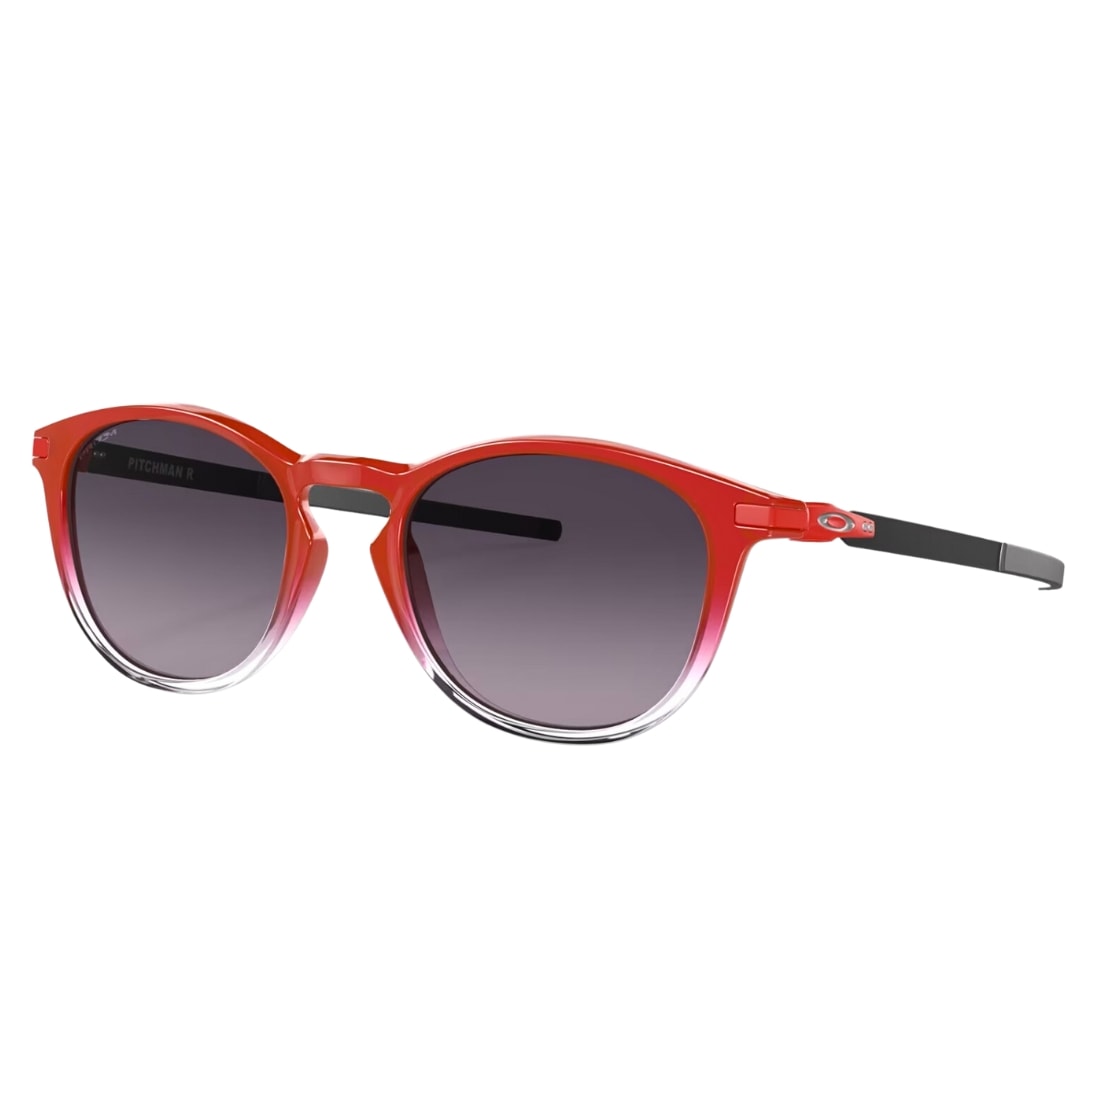 Oakley Pitchman R Fabio Quartararo Collection Sunglasses - Red Fade/Prizm Grey Gradient - Round Sunglasses by Oakley